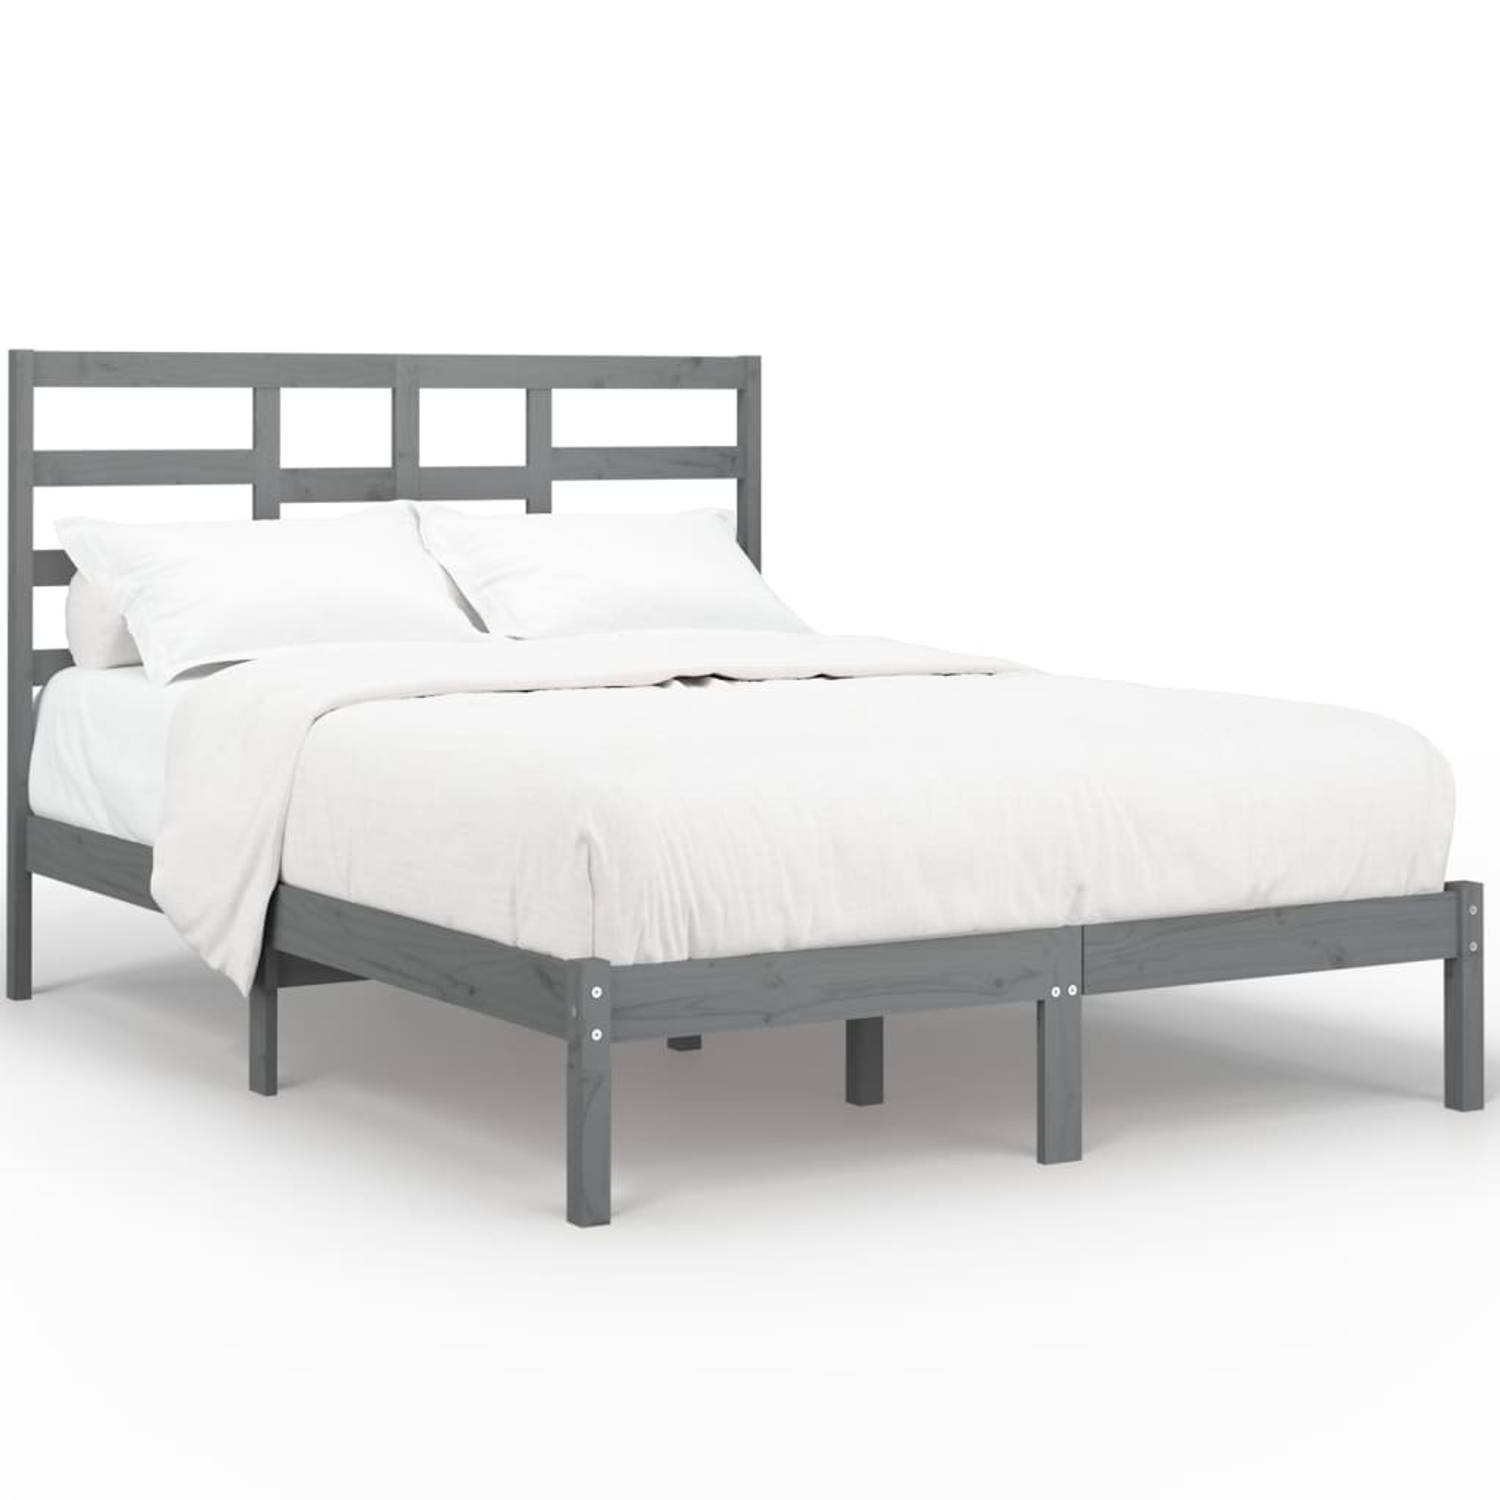 The Living Store Bedframe massief hout grijs 140x190 cm - Bedframe - Bedframes - Bed - Bedbodem - Ledikant - Bed Frame - Massief Houten Bedframe - Slaapmeubel - Tweepersoonsbed - B